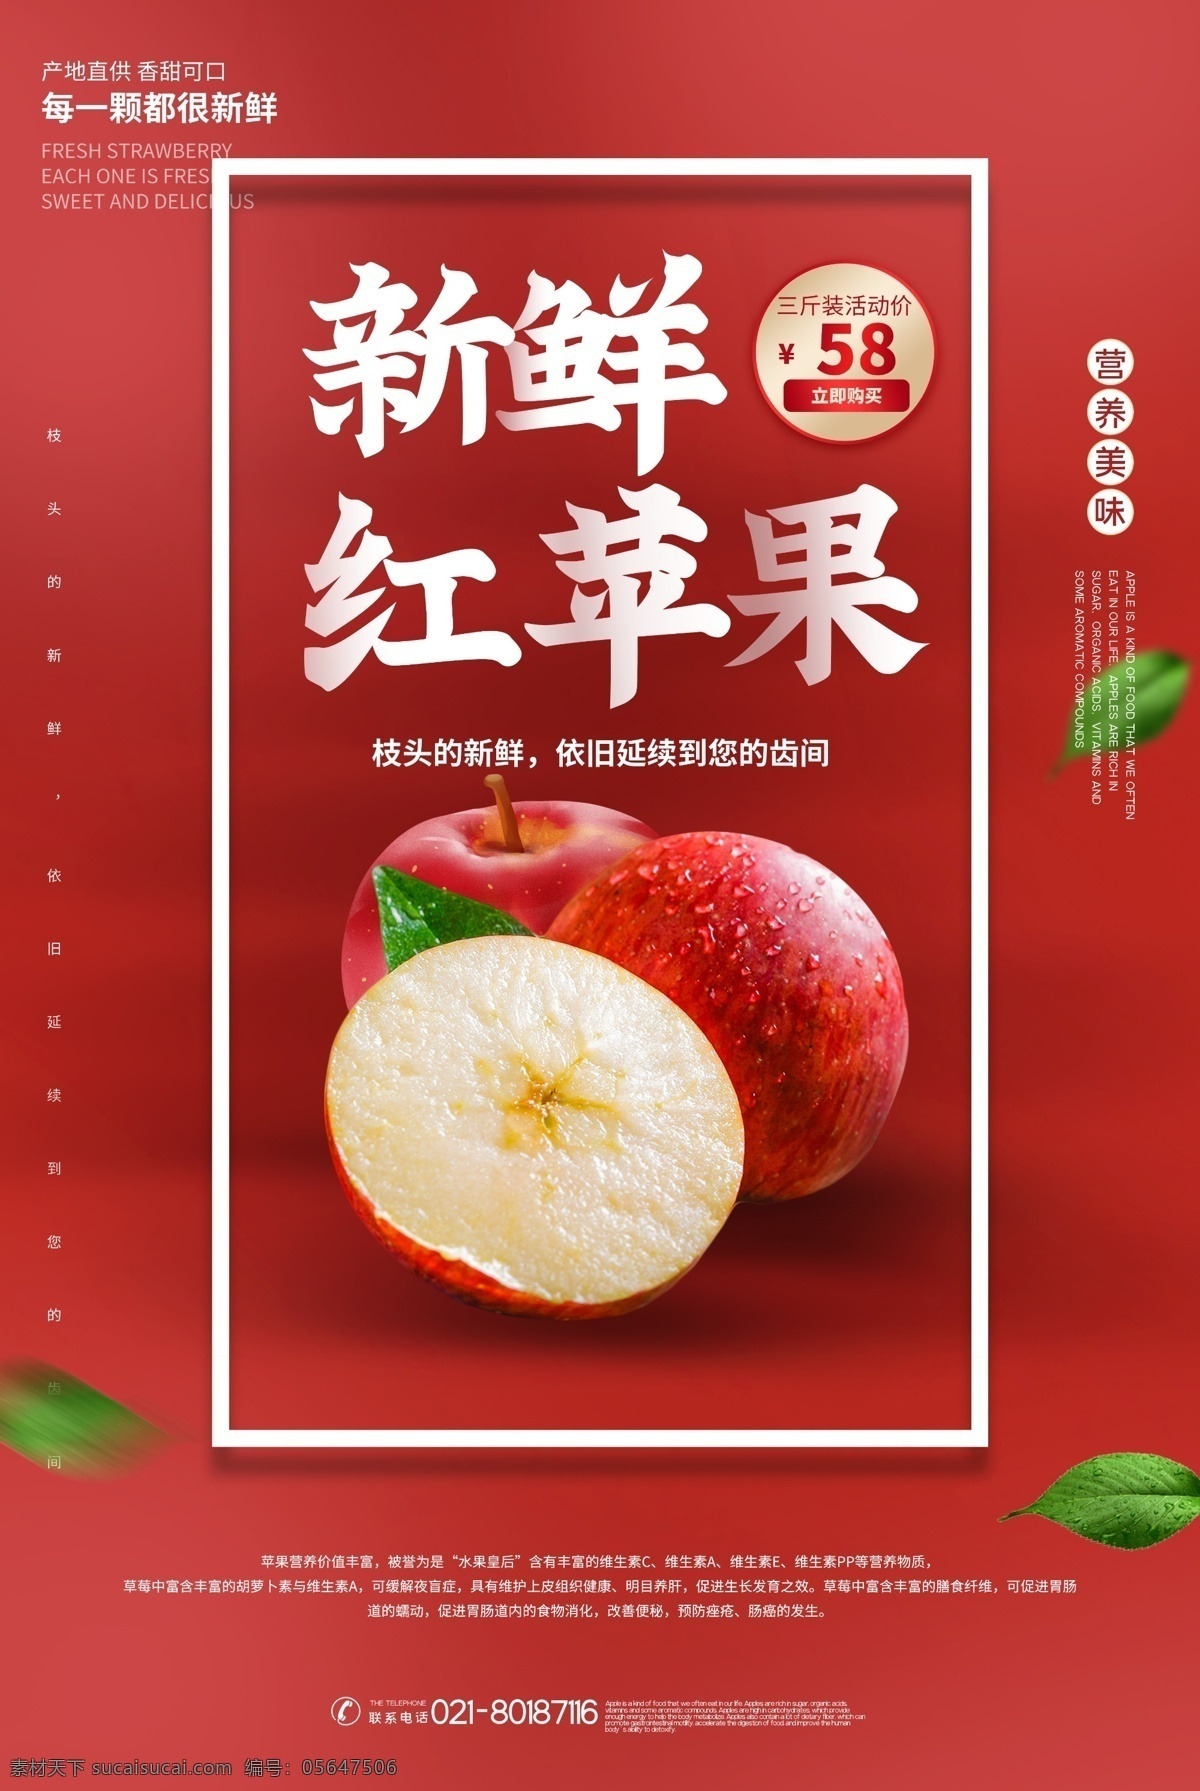 苹果图片 苹果 蛇果 糖心 红富士 青苹果 水果 海报